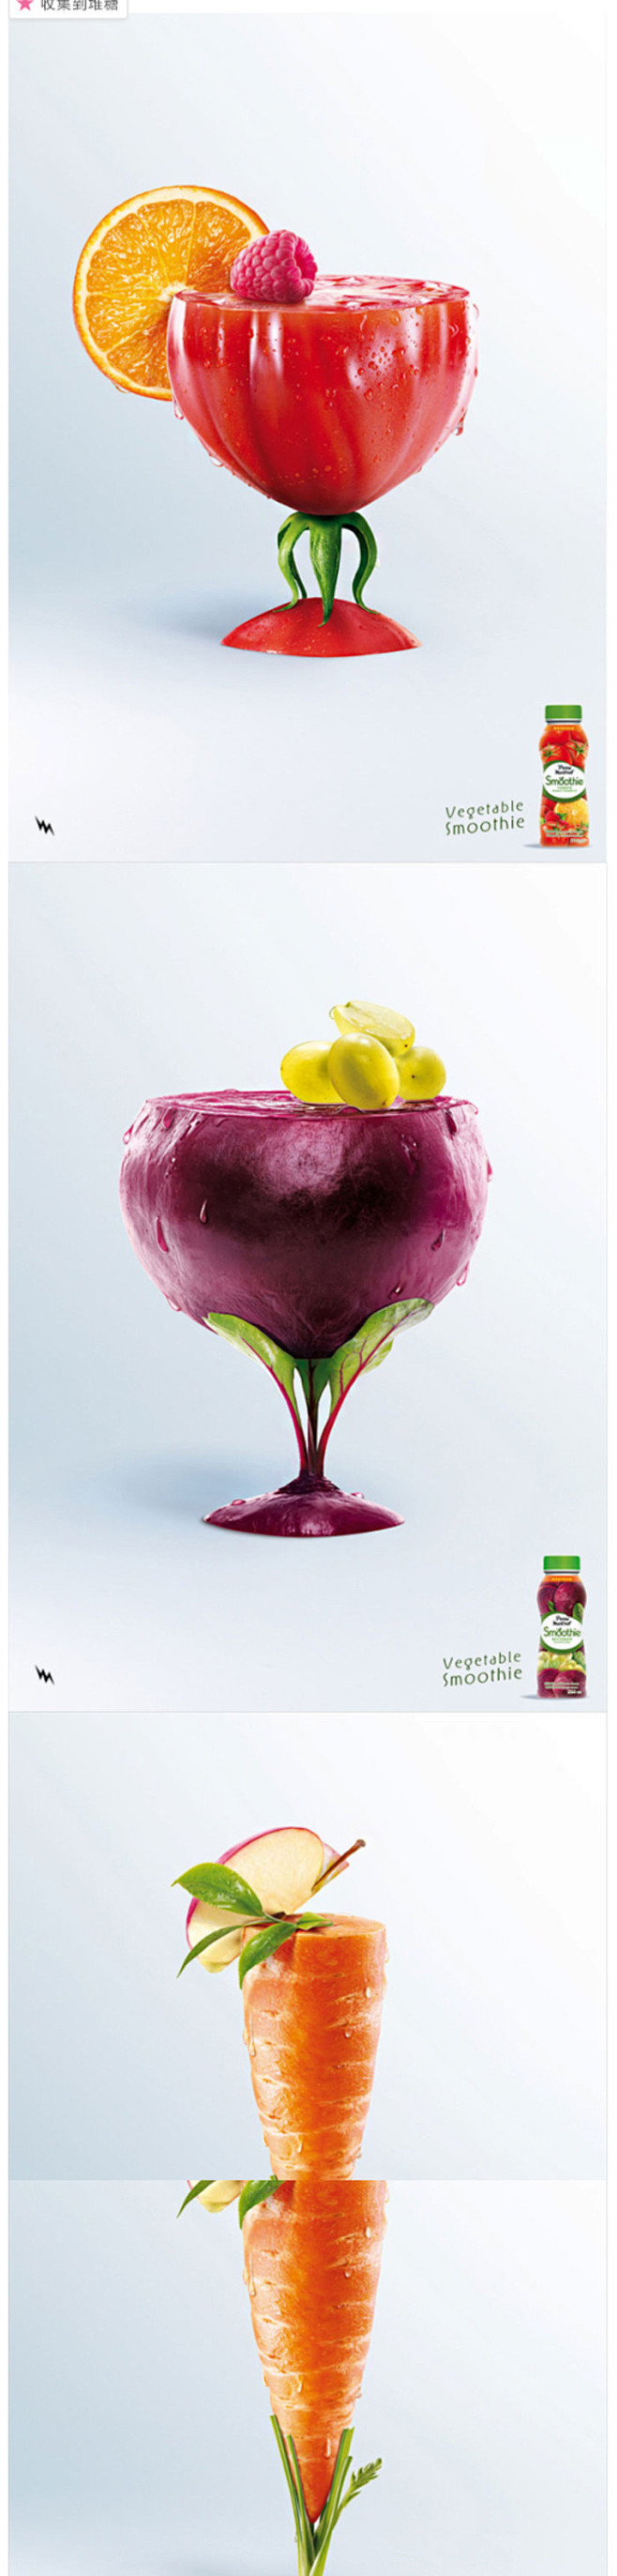 创意的饮料广告海报, 看上去像蔬菜鸡尾酒...